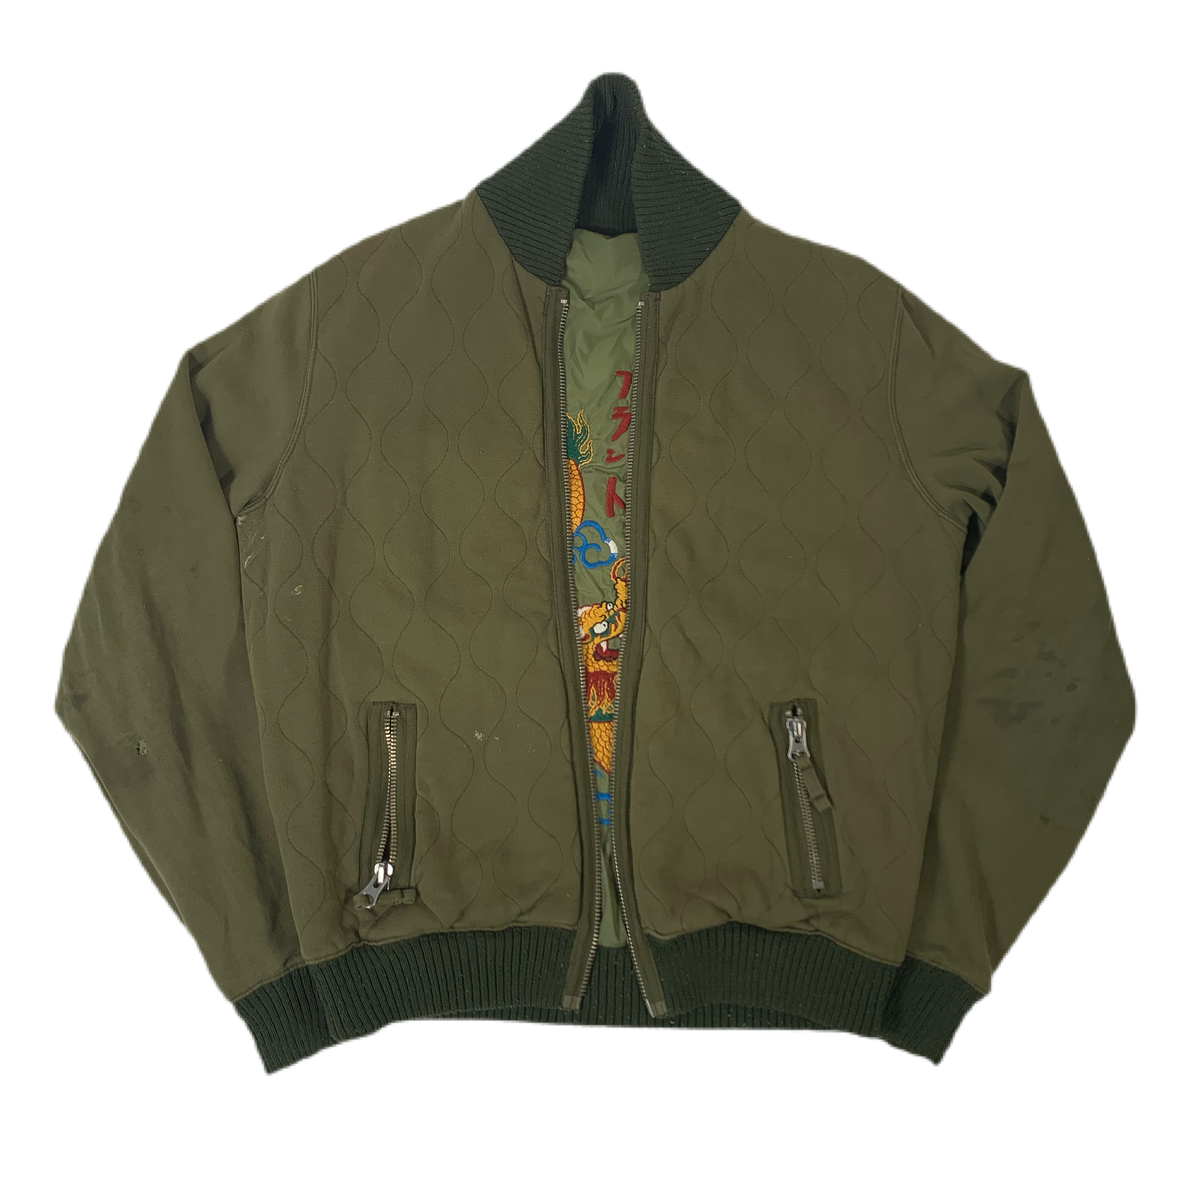 Vintage Reversible “Bomber” Jacket